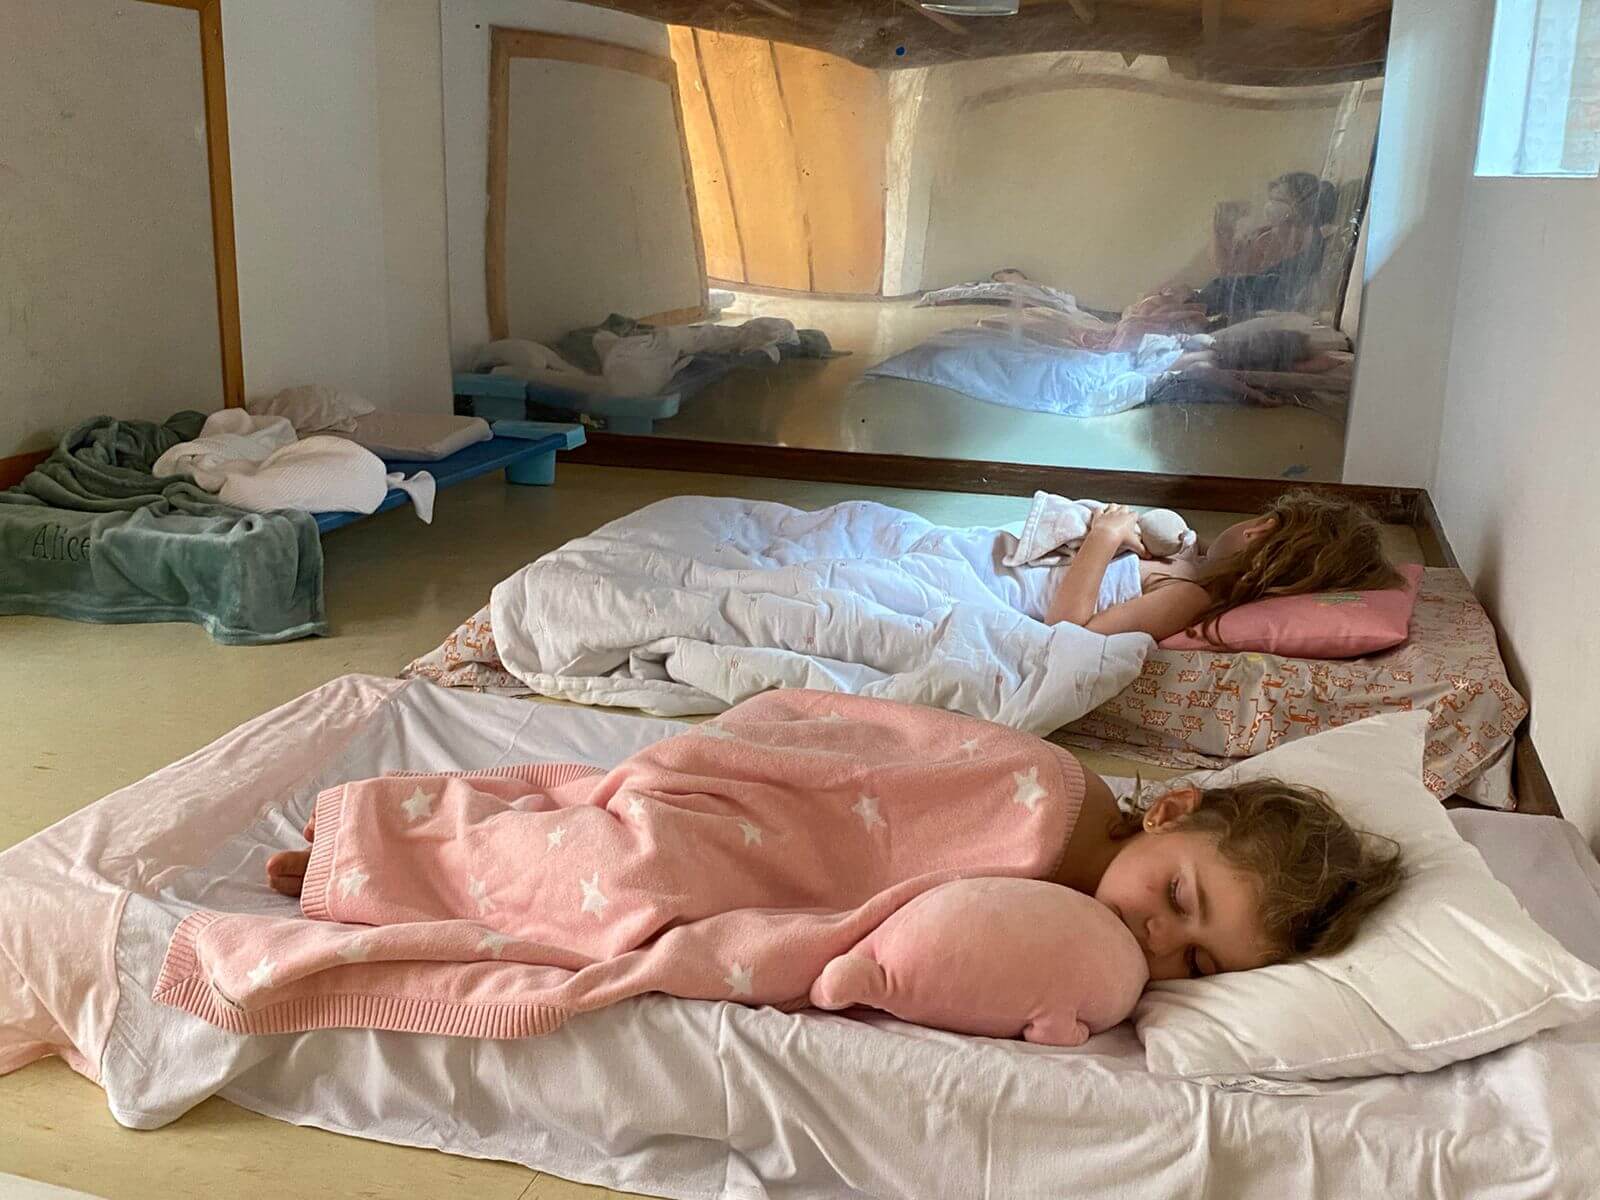 A imagem mostra 2 crianças dormindo.